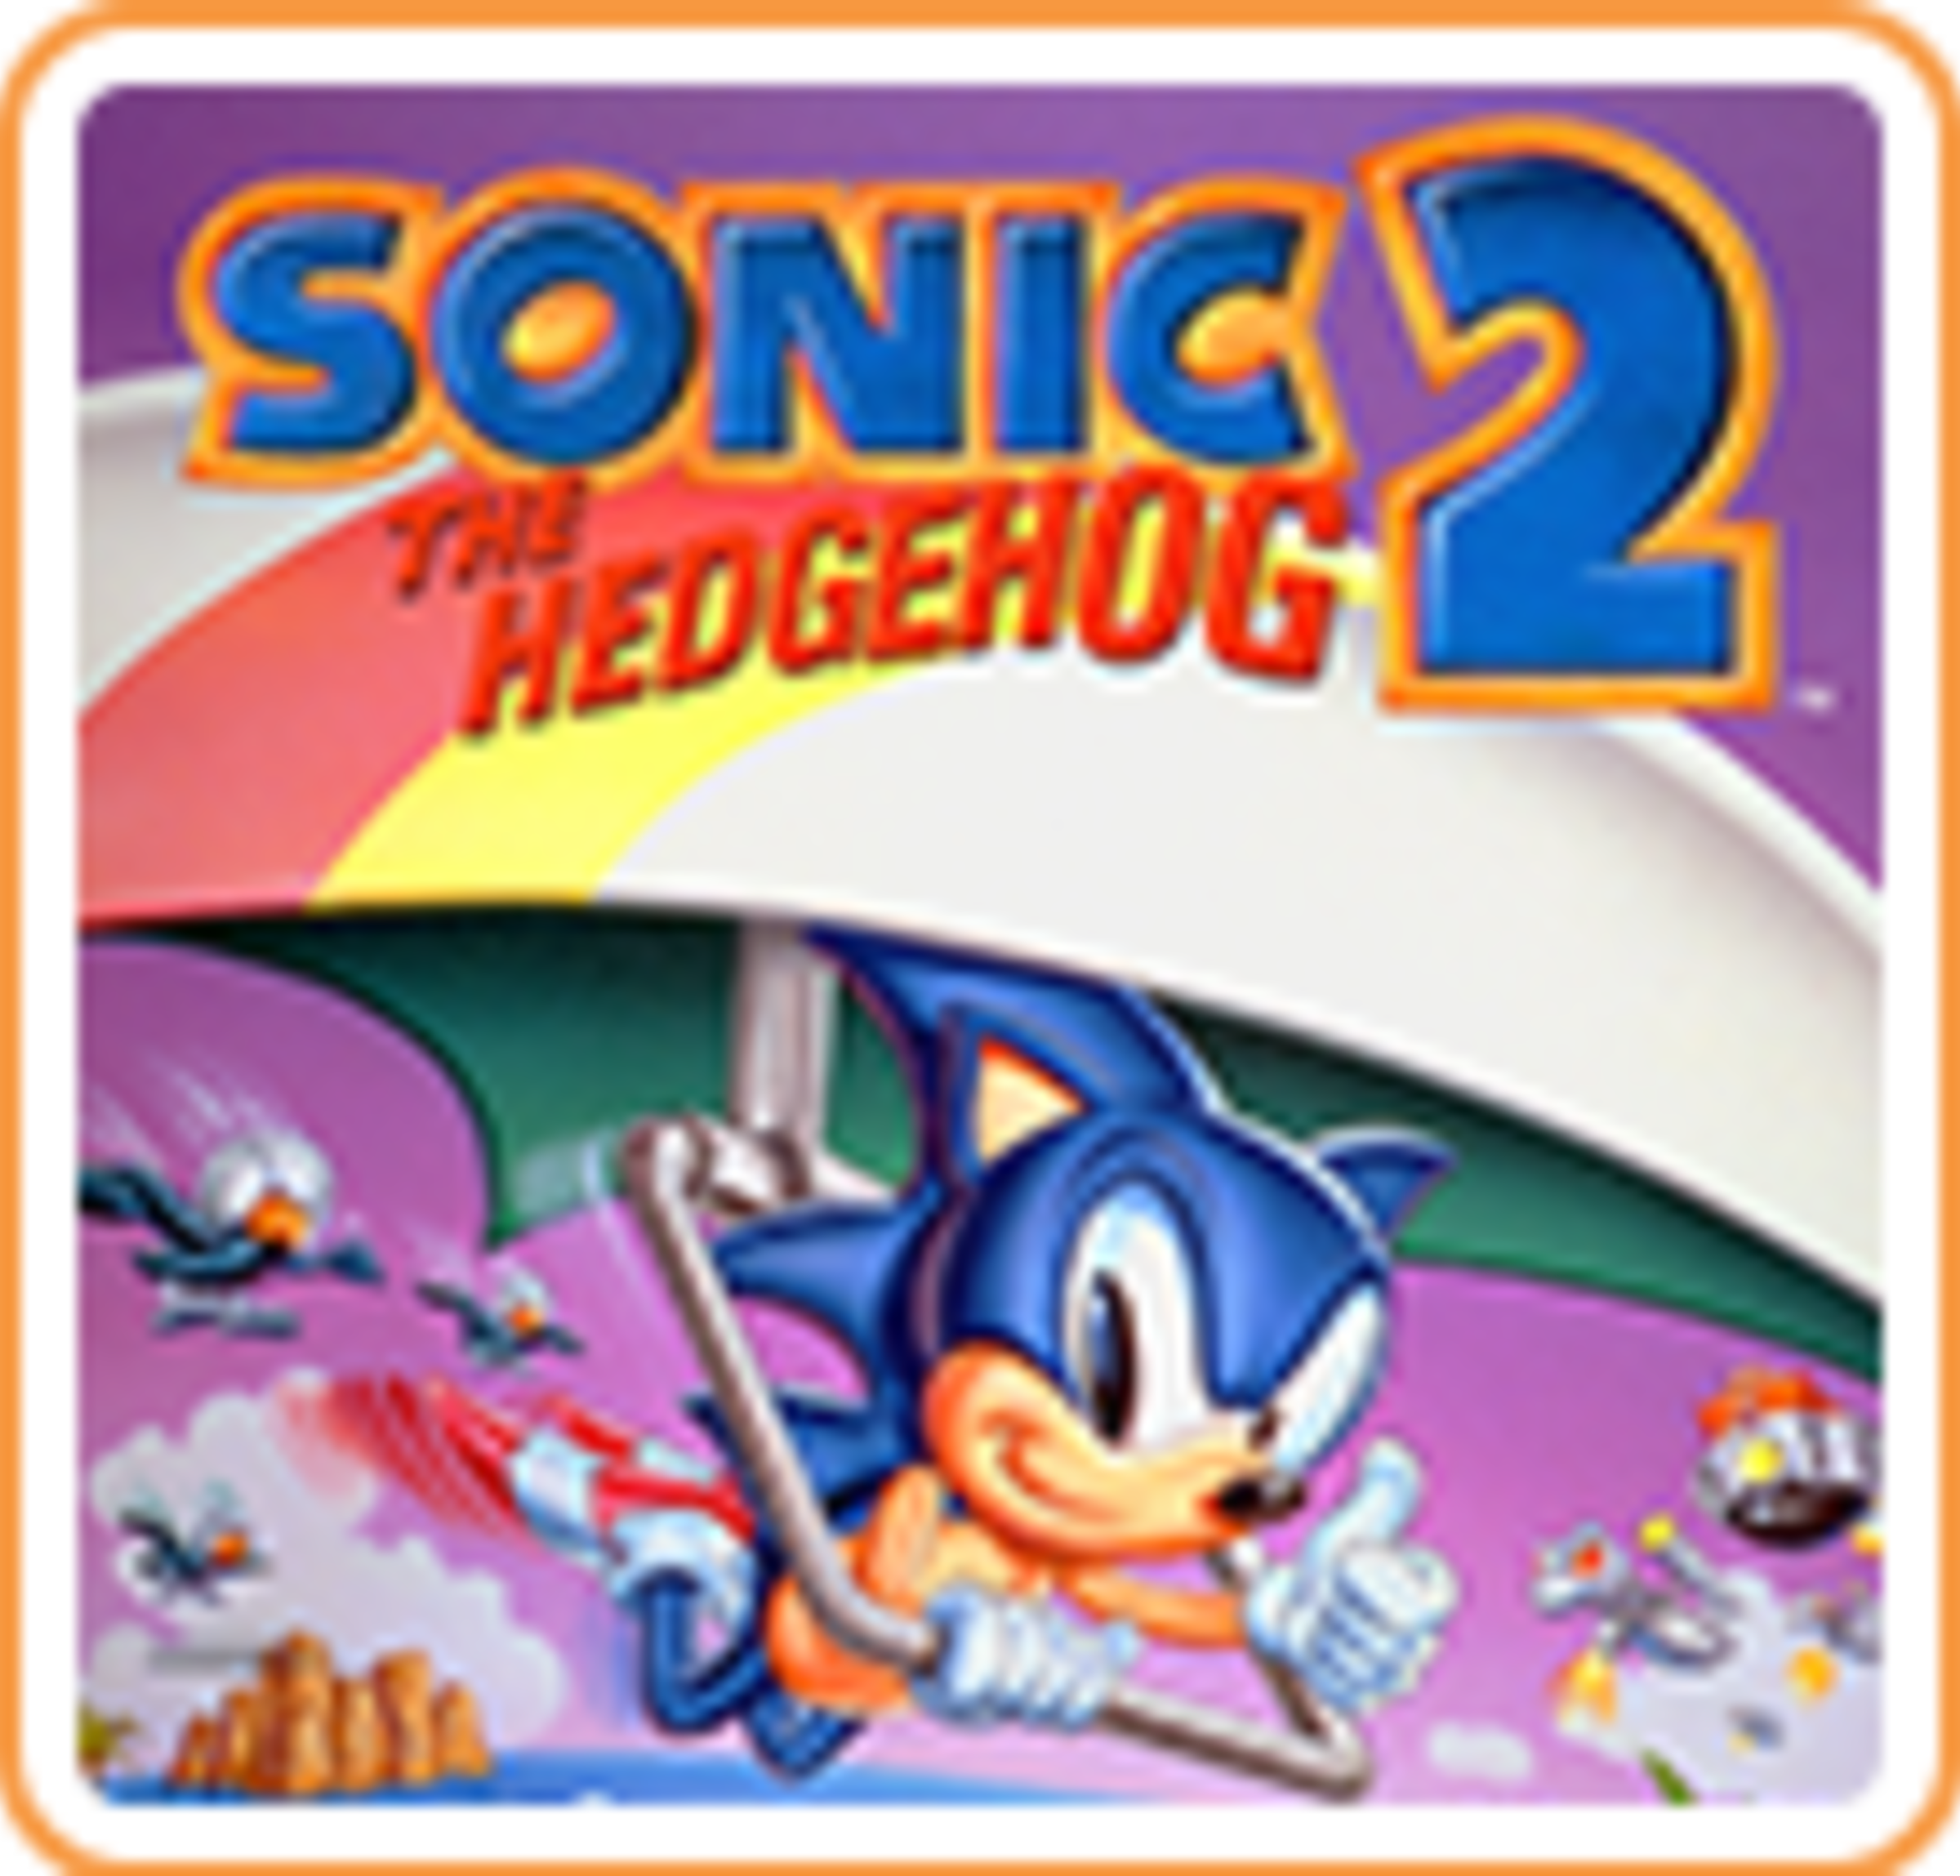 Sonic The Hedgehog 2 for Nintendo - Nintendo Official Site